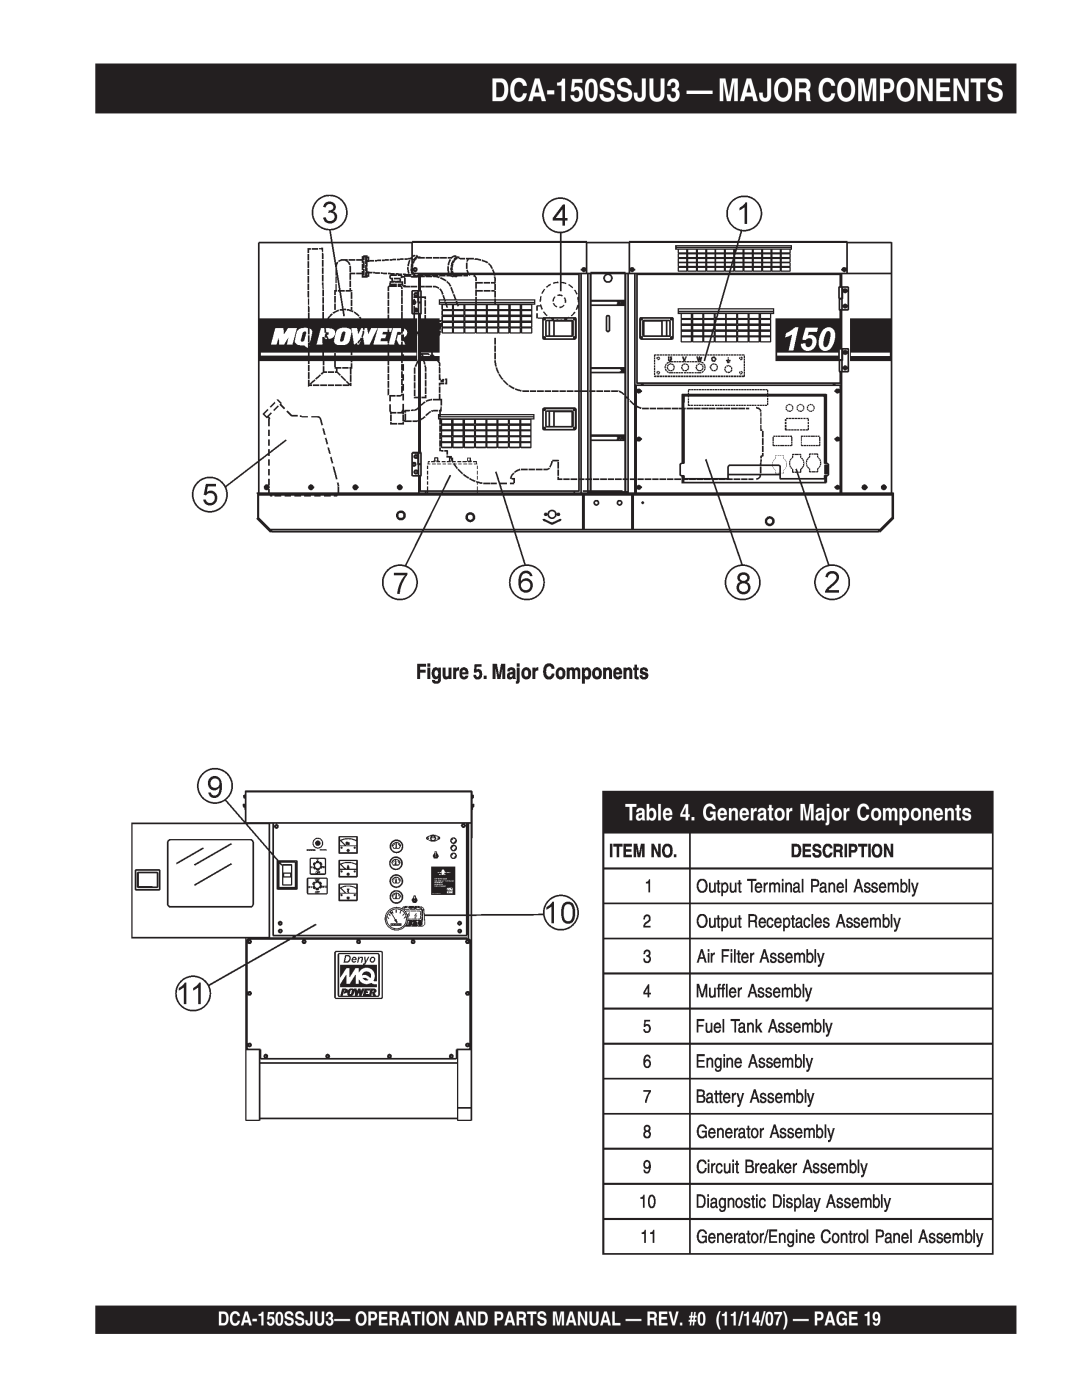 Multiquip operation manual DCA-150SSJU3— MAJOR COMPONENTS, Generator Major Components, Description 